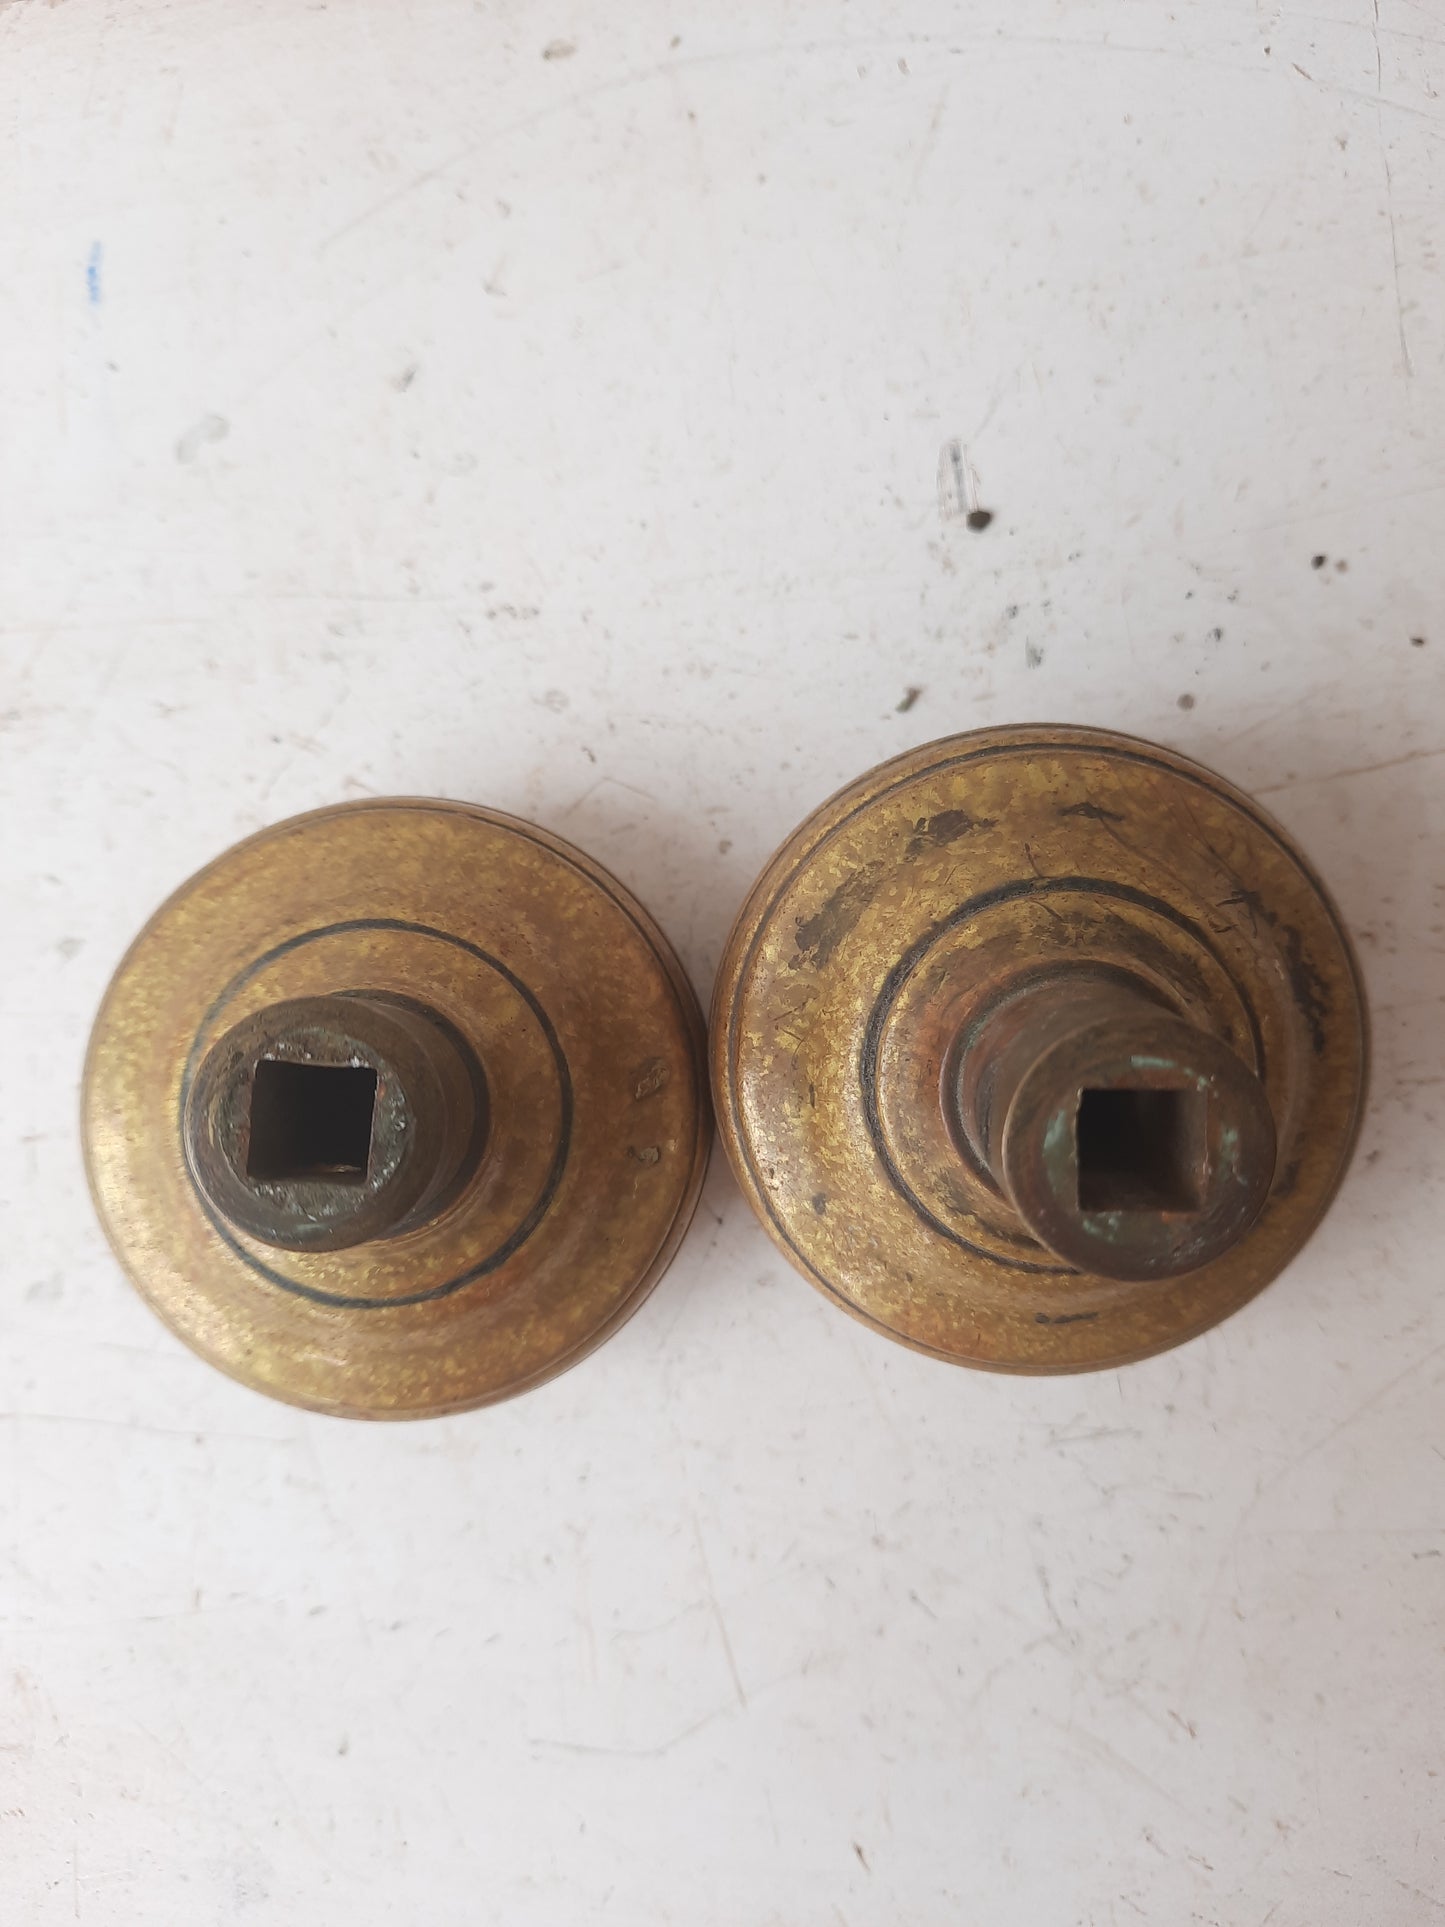 Ornate Pair of Antique Brass Doorknobs, 1900s Brass or Bronze Door Knobs with Design F-208